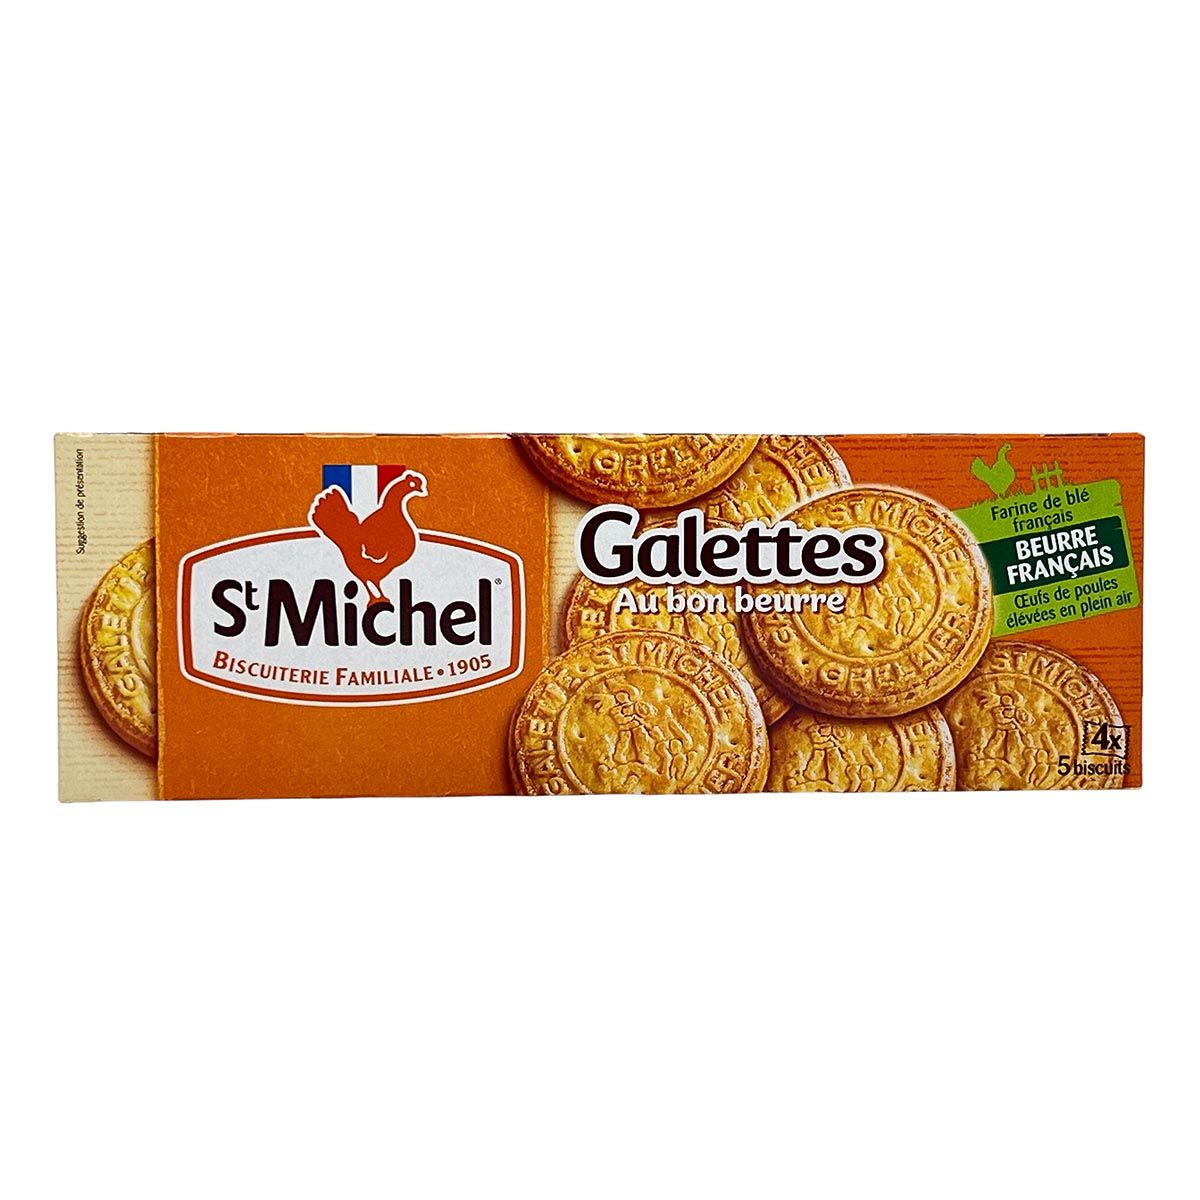 St Michel - Bio Galettes mit Butter